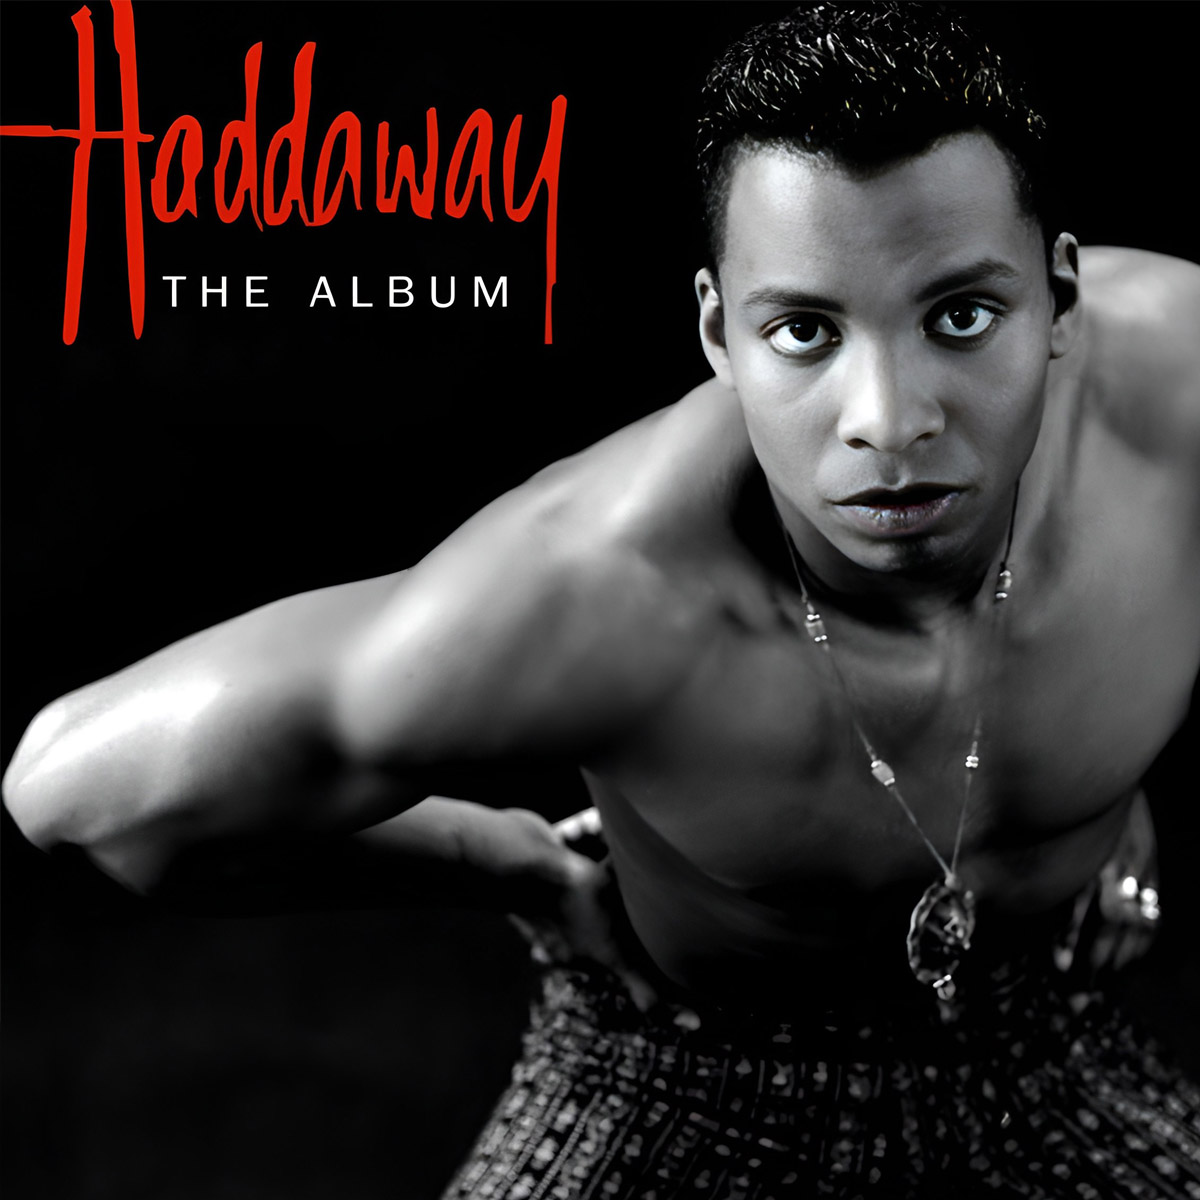 Обложка дебютного альбома Haddaway